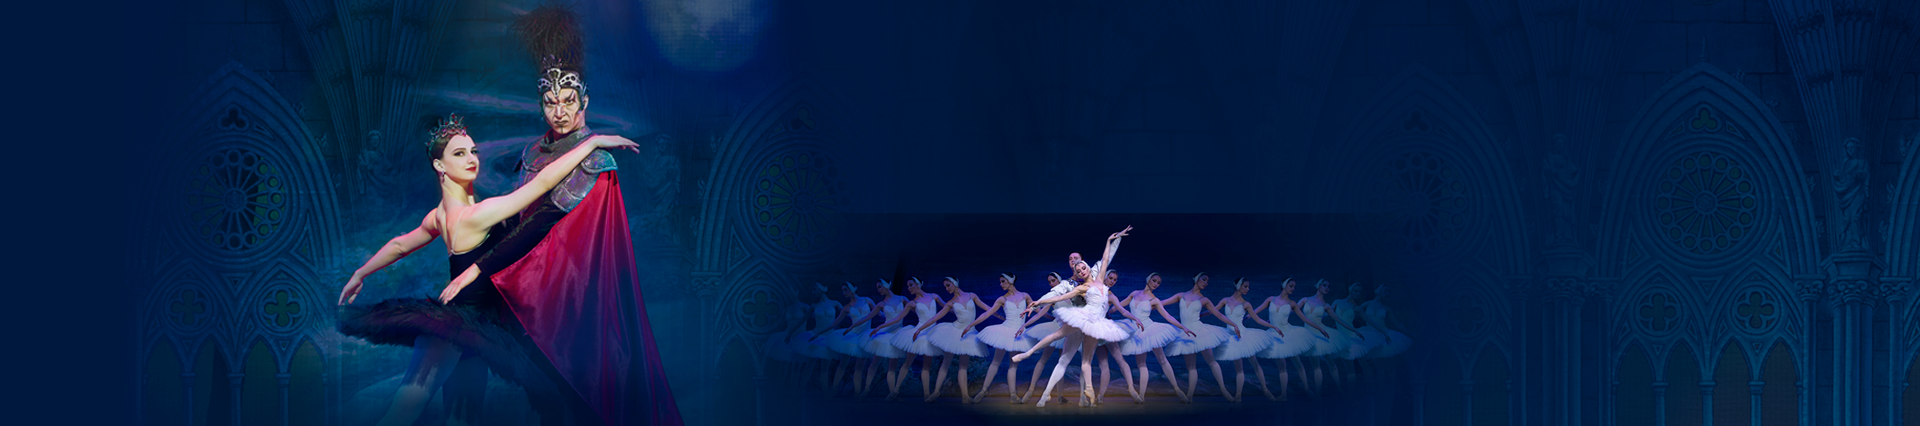 Swan Lake – International Festival Ballet – The best ballet classic ever